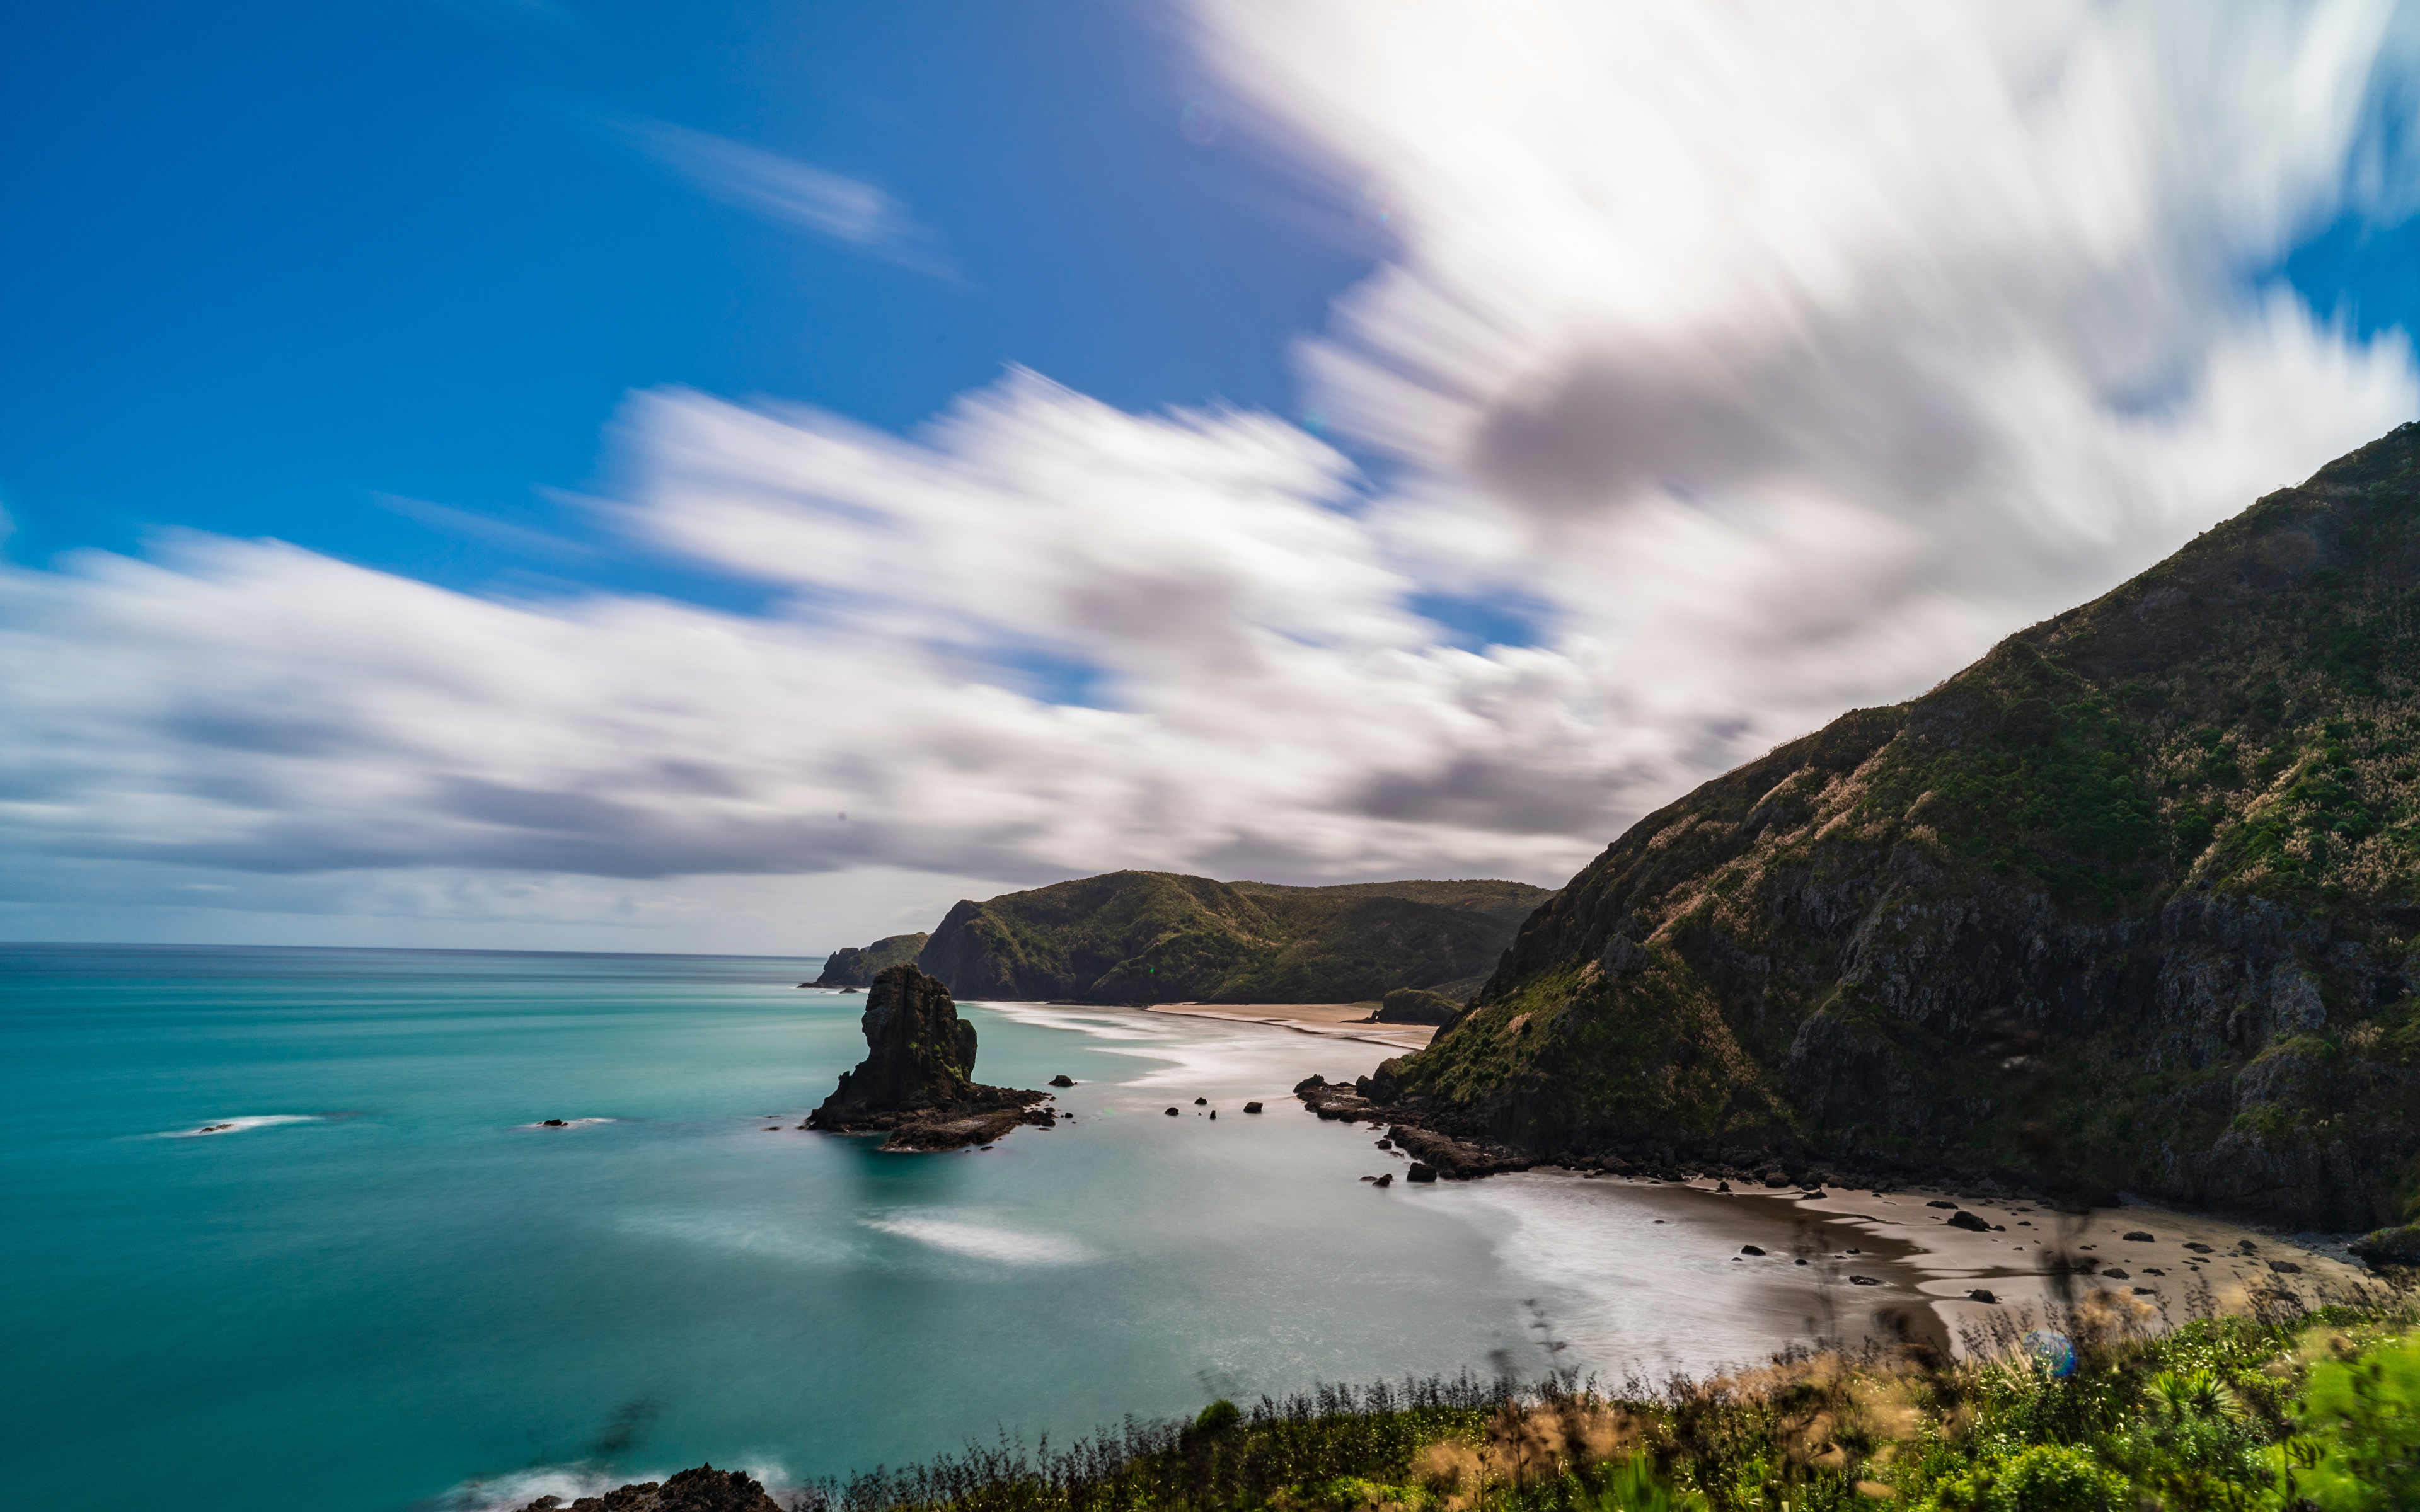 Обои для рабочего стола Новая Зеландия Piha Beach скалы Природа Побережье Облака 3840x2400 Утес скале Скала берег облако облачно